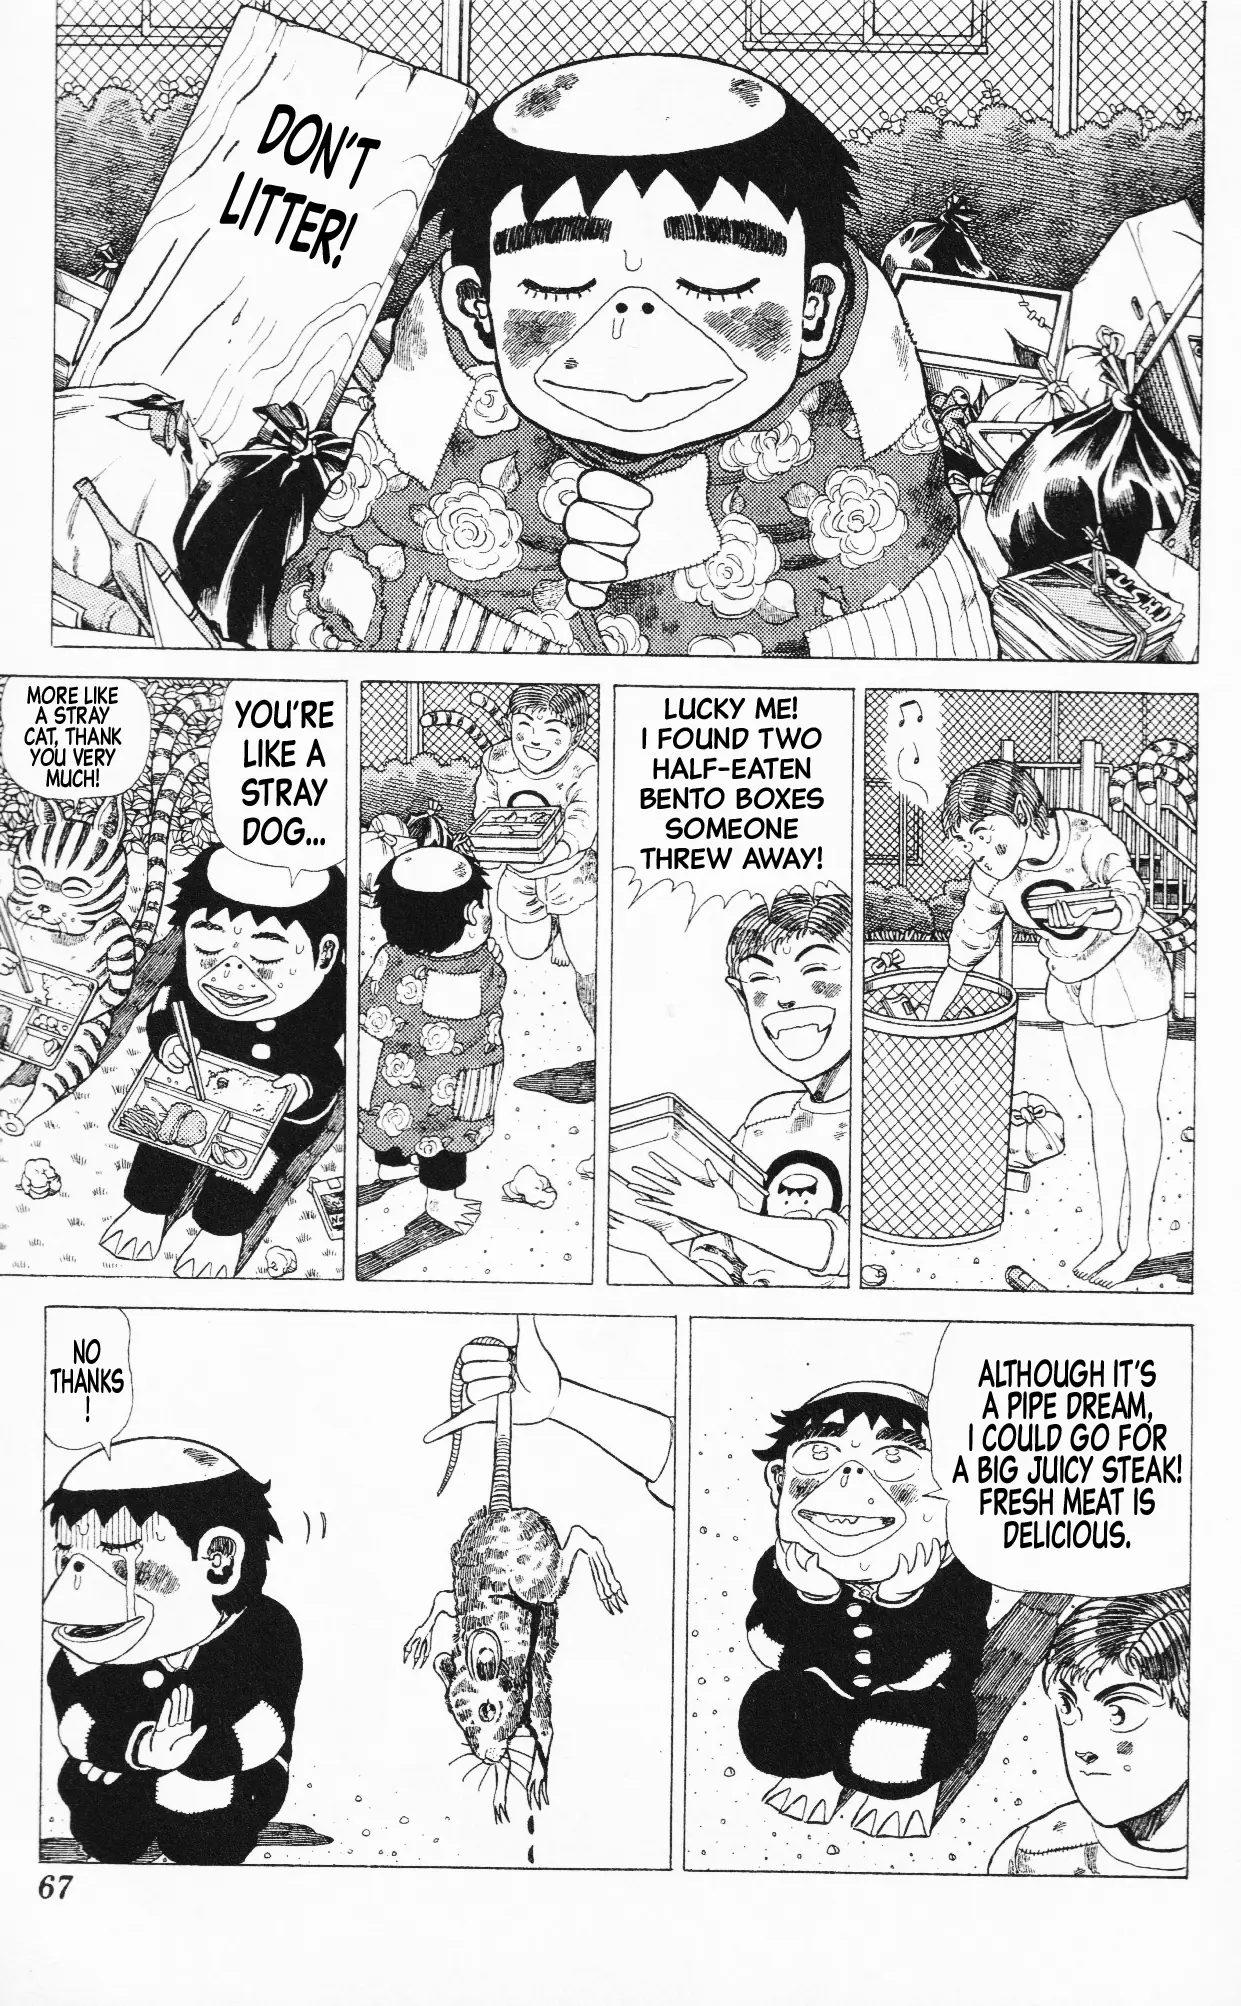 Mizu No Tomodachi Kappaman - 14 page 13-8113fa57